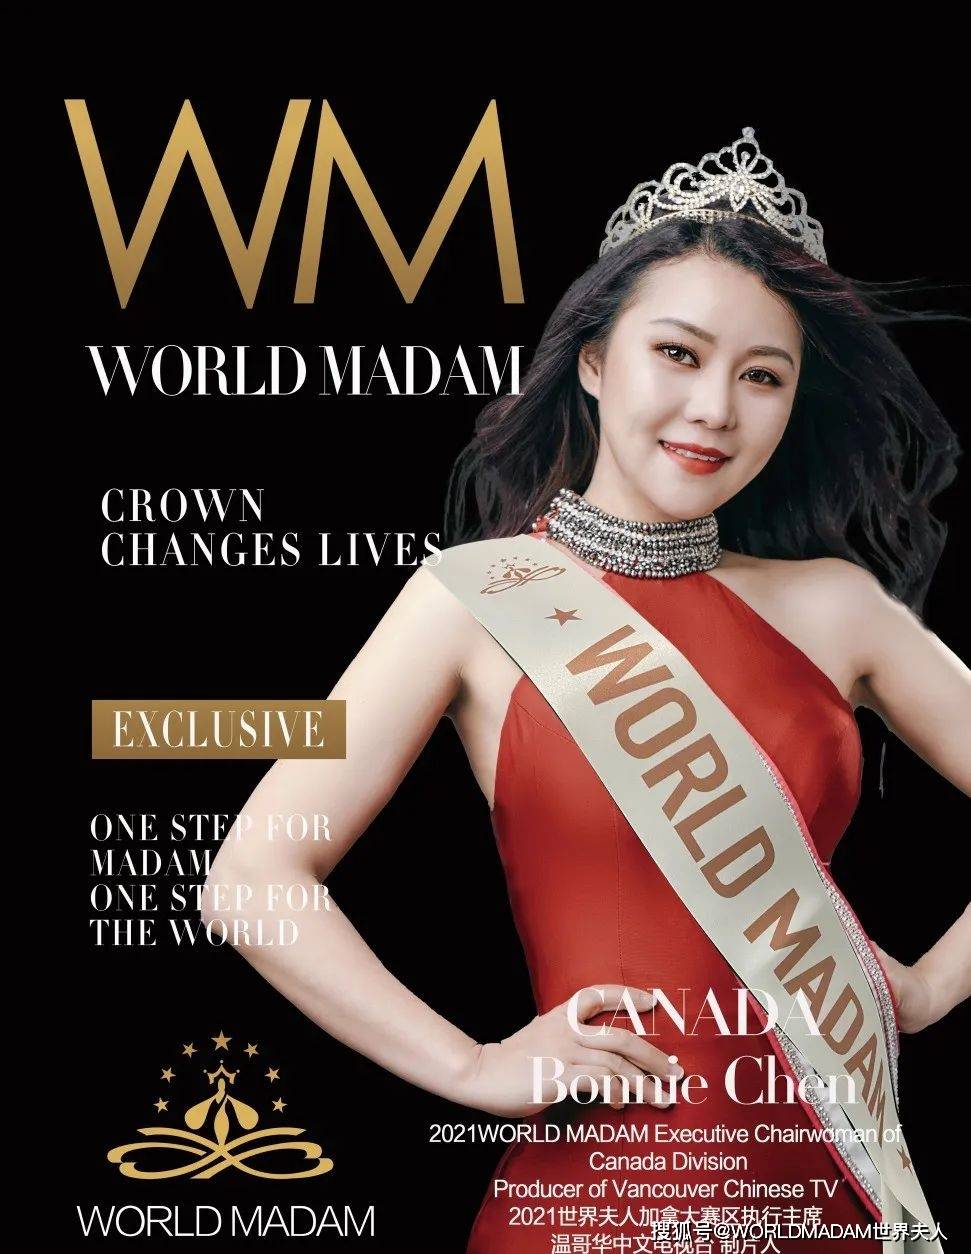 人物专访Bonnie Chen|WORLD MADAM世界夫人加拿大赛区执行主席_陈芸_  image